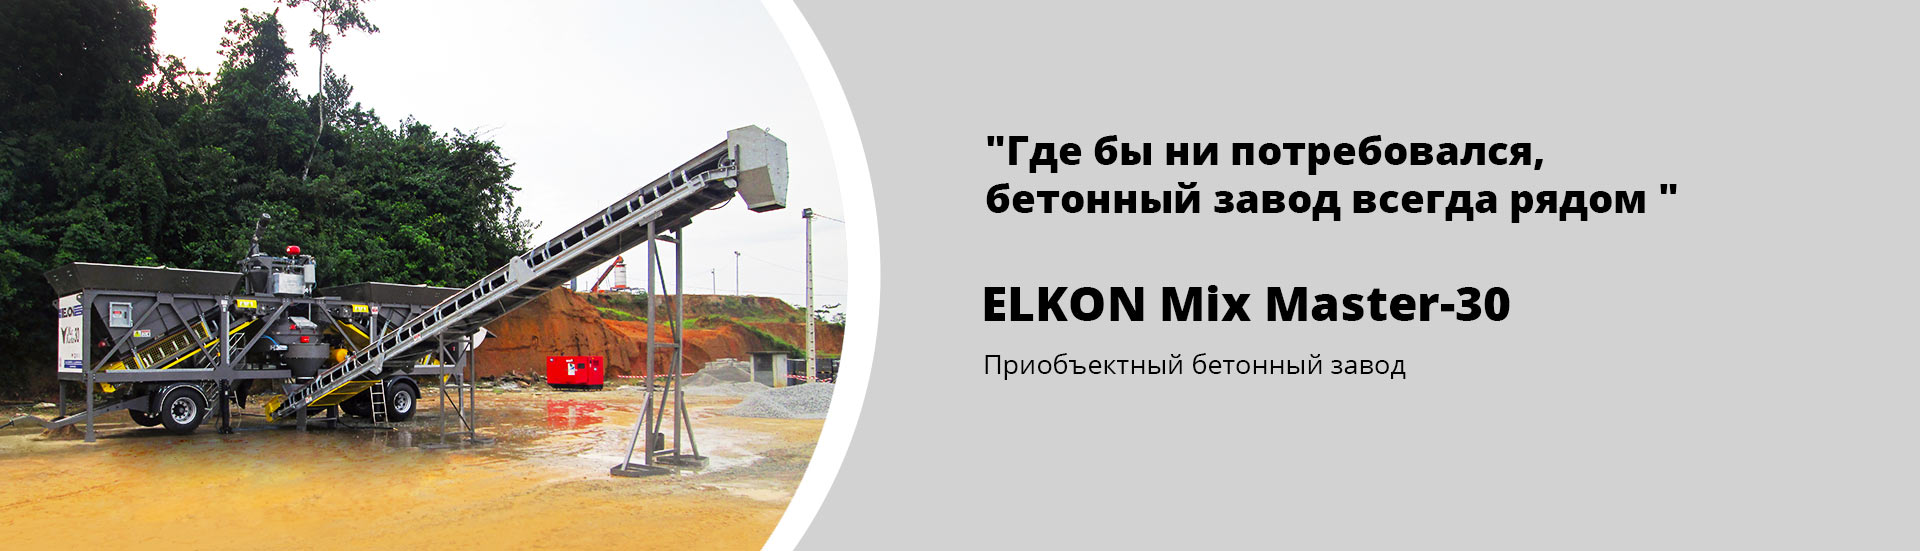 Приобъектный бетонный завод ELKON MIX MASTER-30 